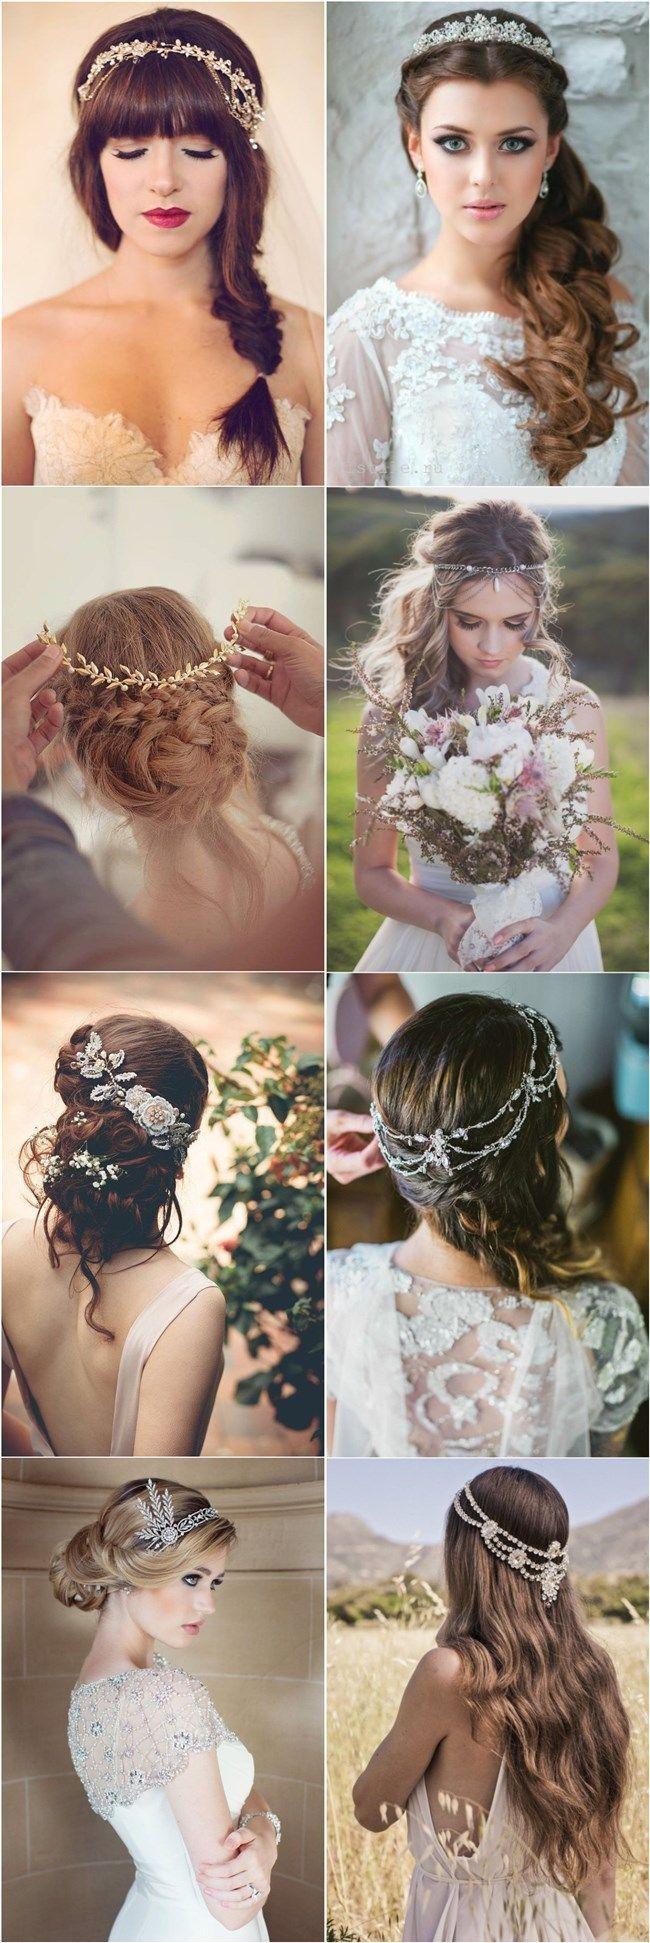 Wedding - 25 Amazing Wedding Hairstyles With Headpiece